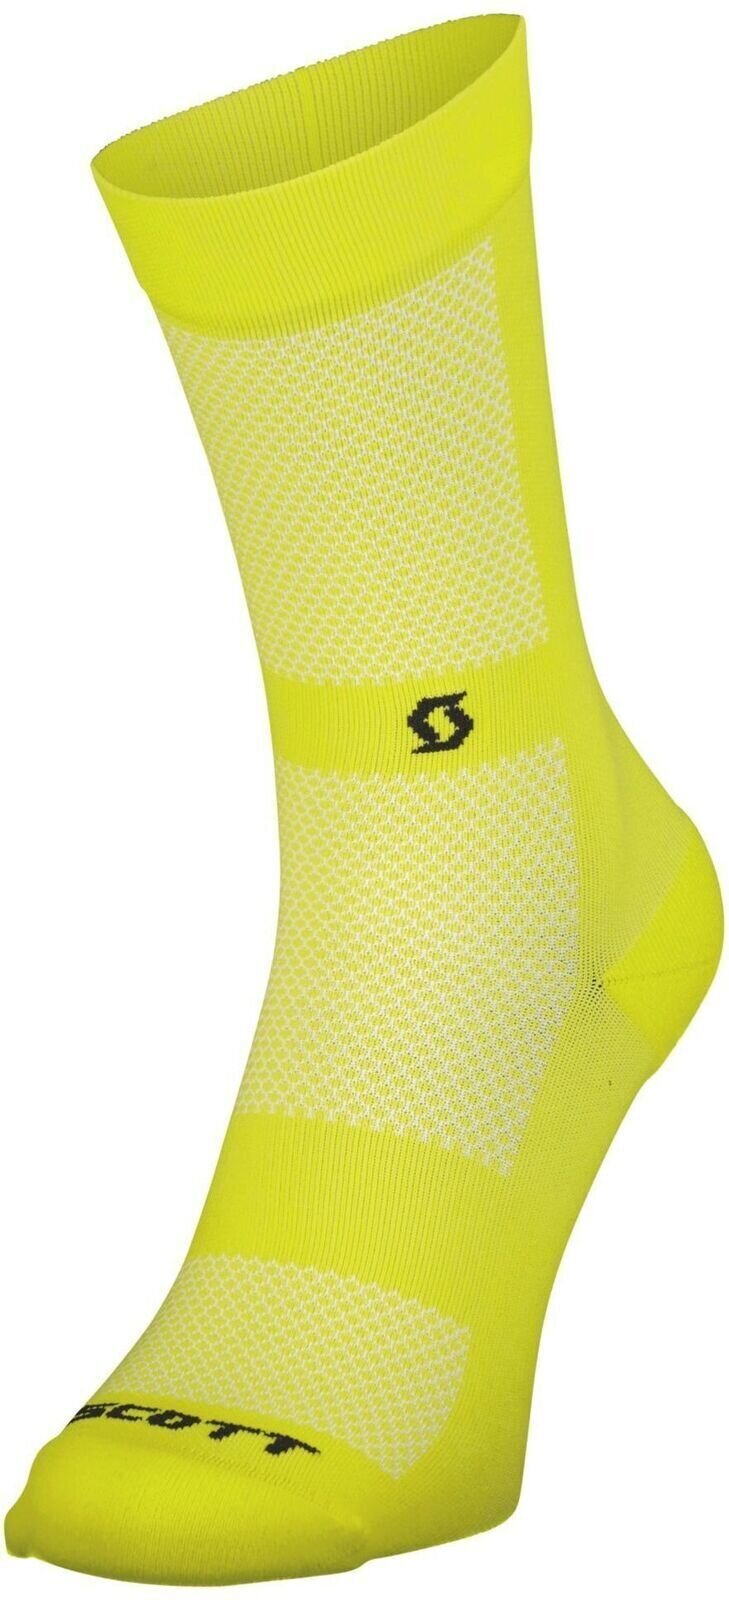 Biciklistički čarape Scott Performance No Shortcuts Crew Socks Sulphur Yellow/Black 45-47 Biciklistički čarape